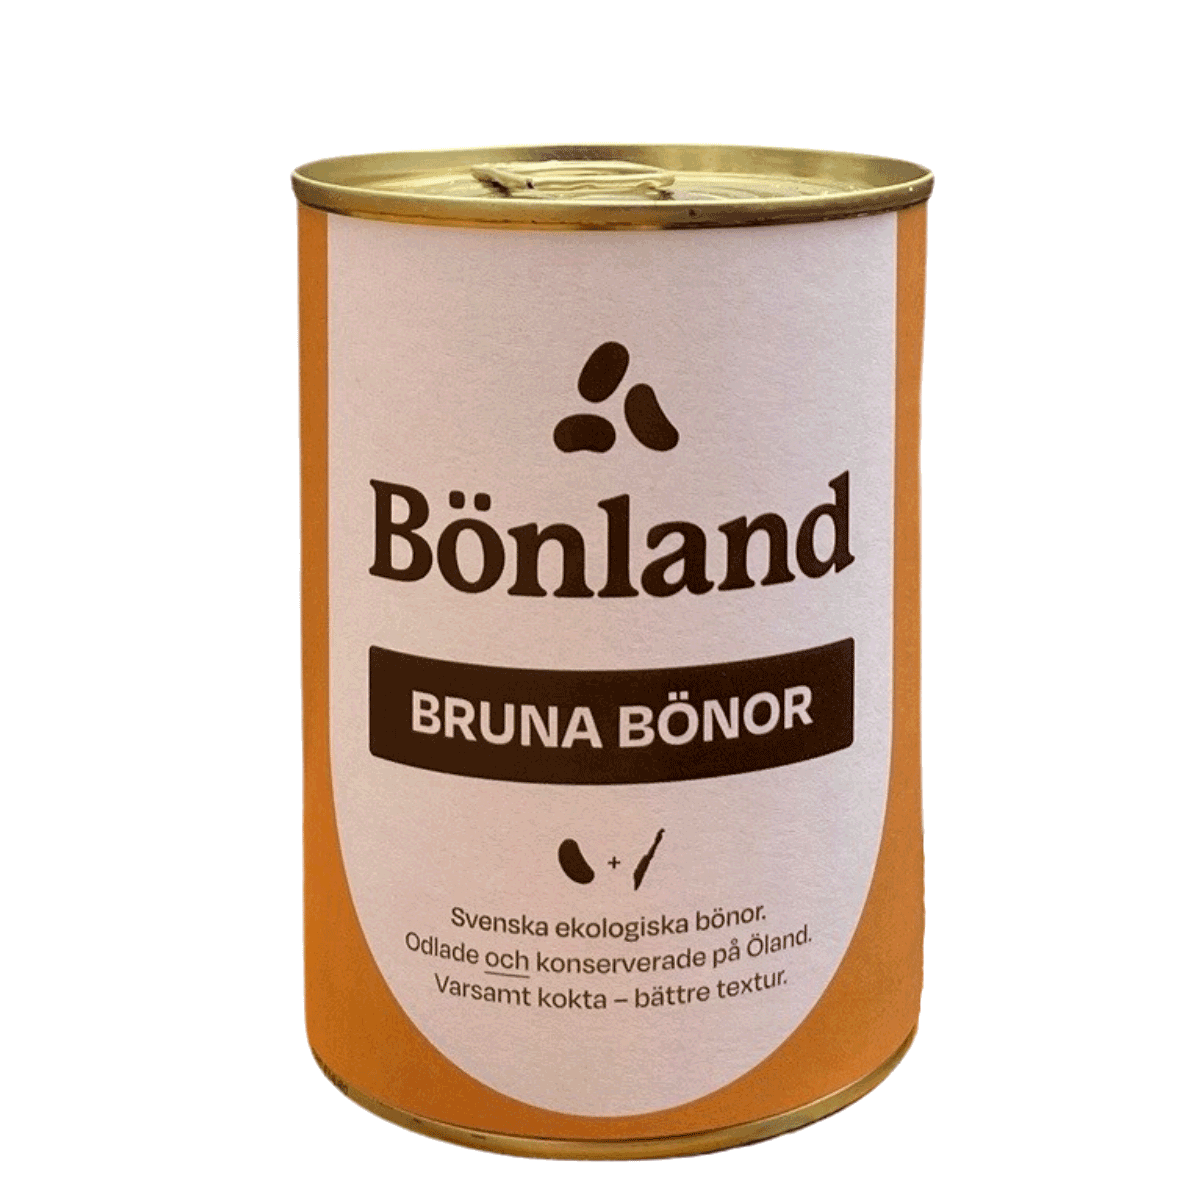 Bönland's Bruna bönor'